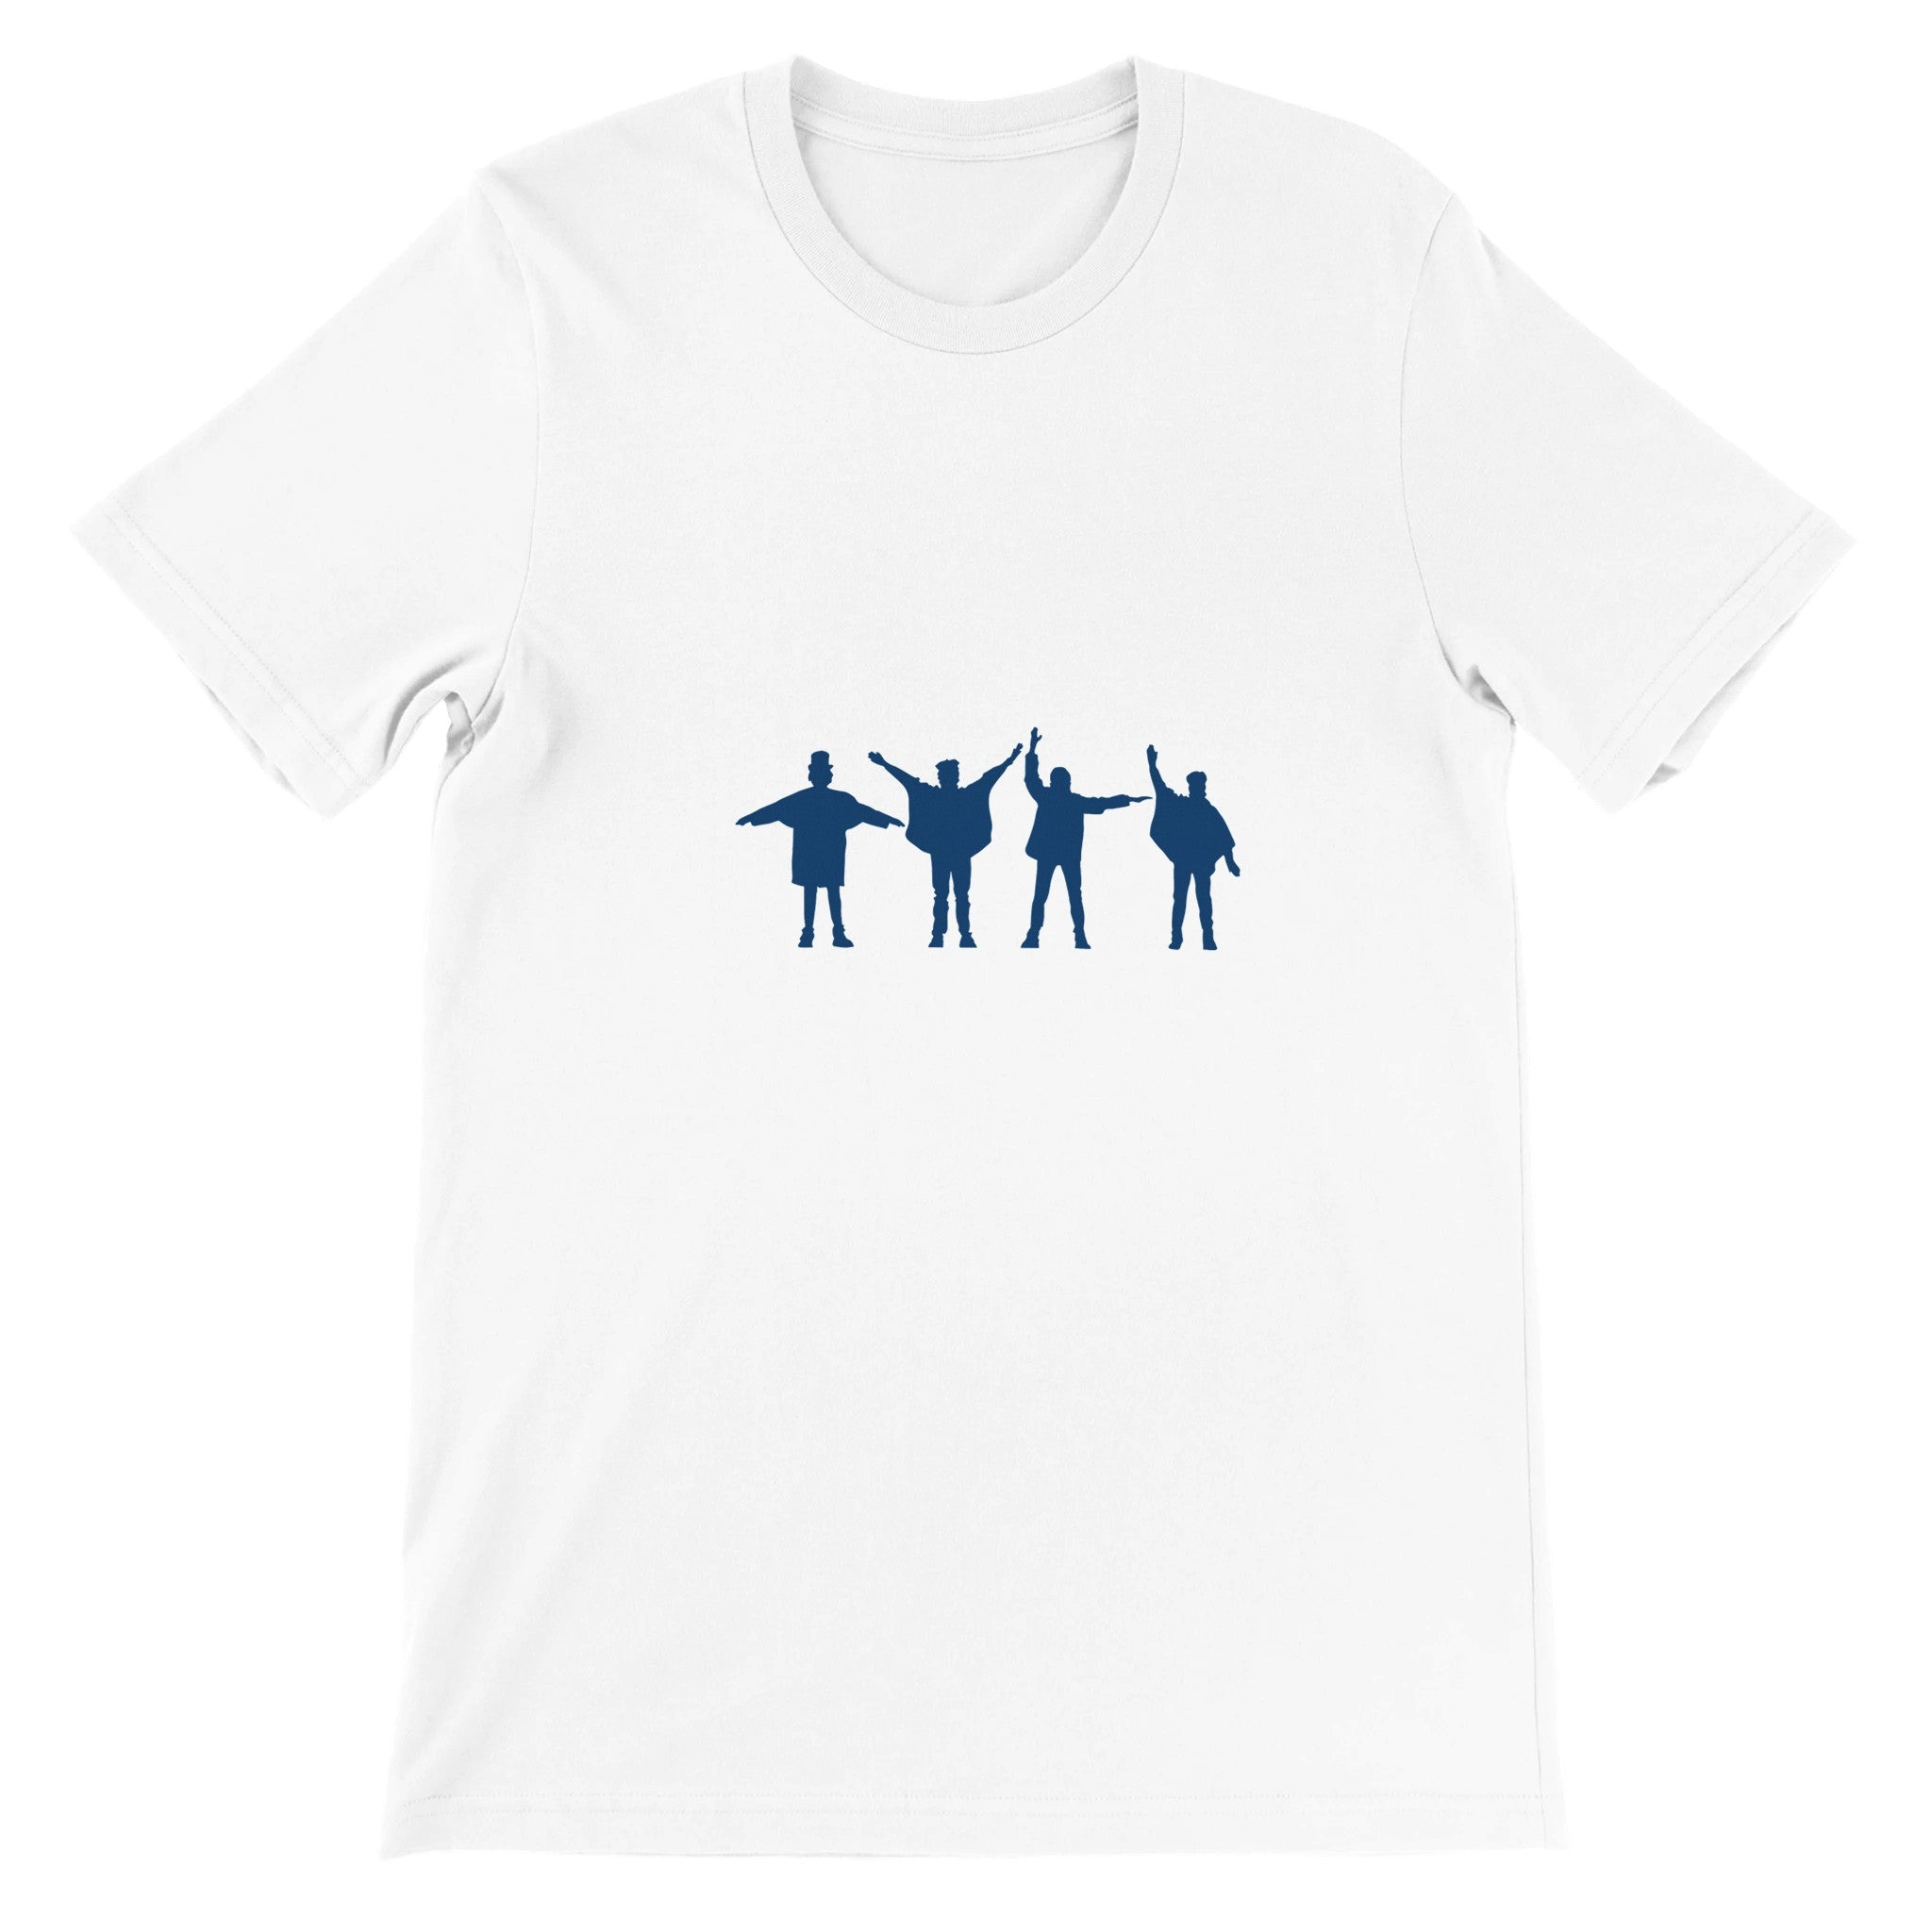 Help The Beatles Crewneck T-shirt - Optimalprint